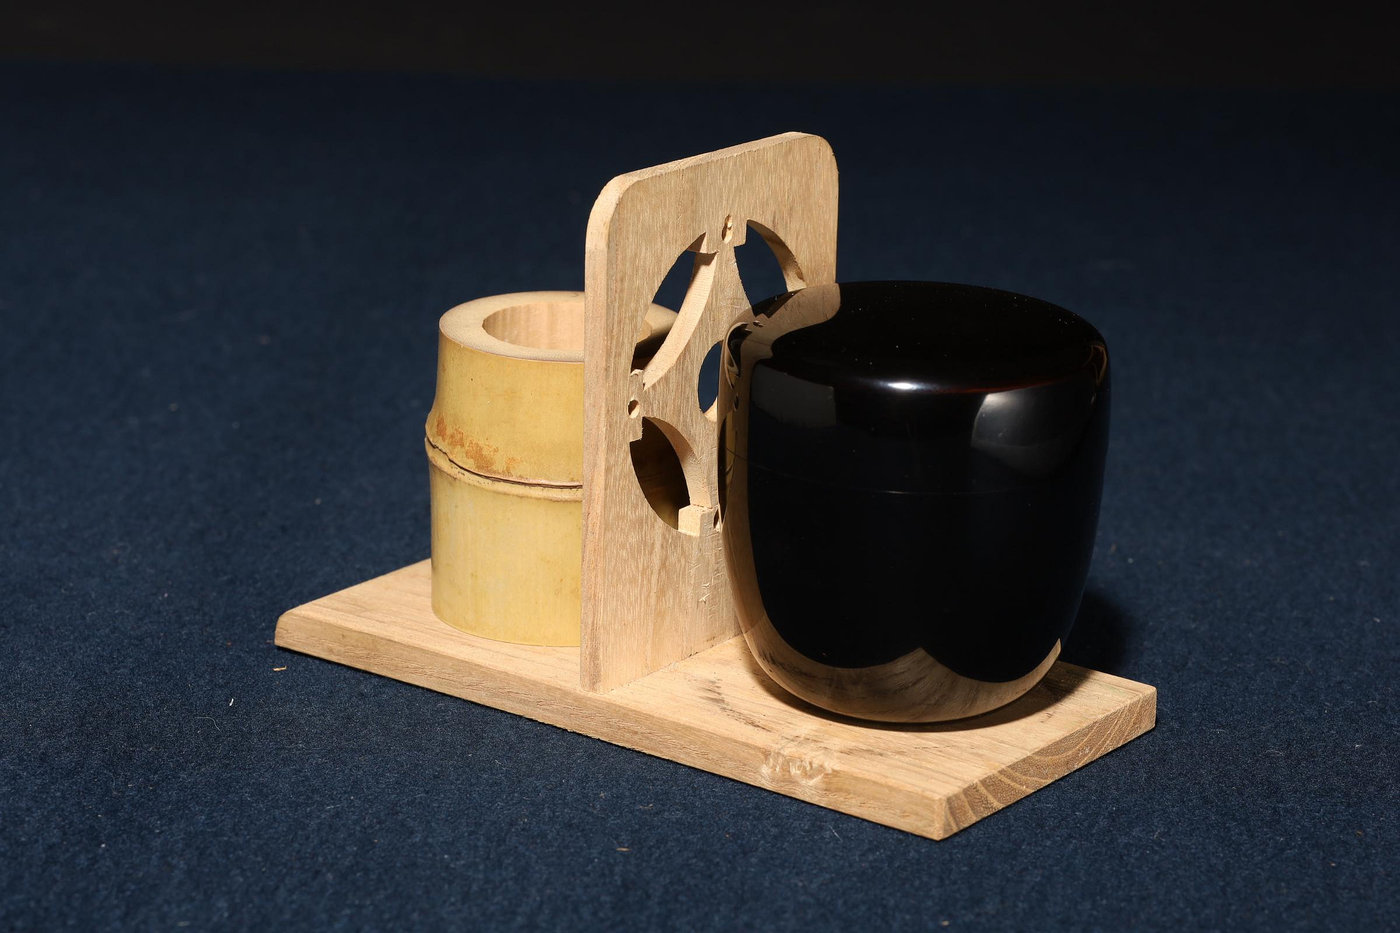 2/14結標日本煎茶道具原木煎茶箱A020250 -茶道具日本茶道品茶煎茶器 